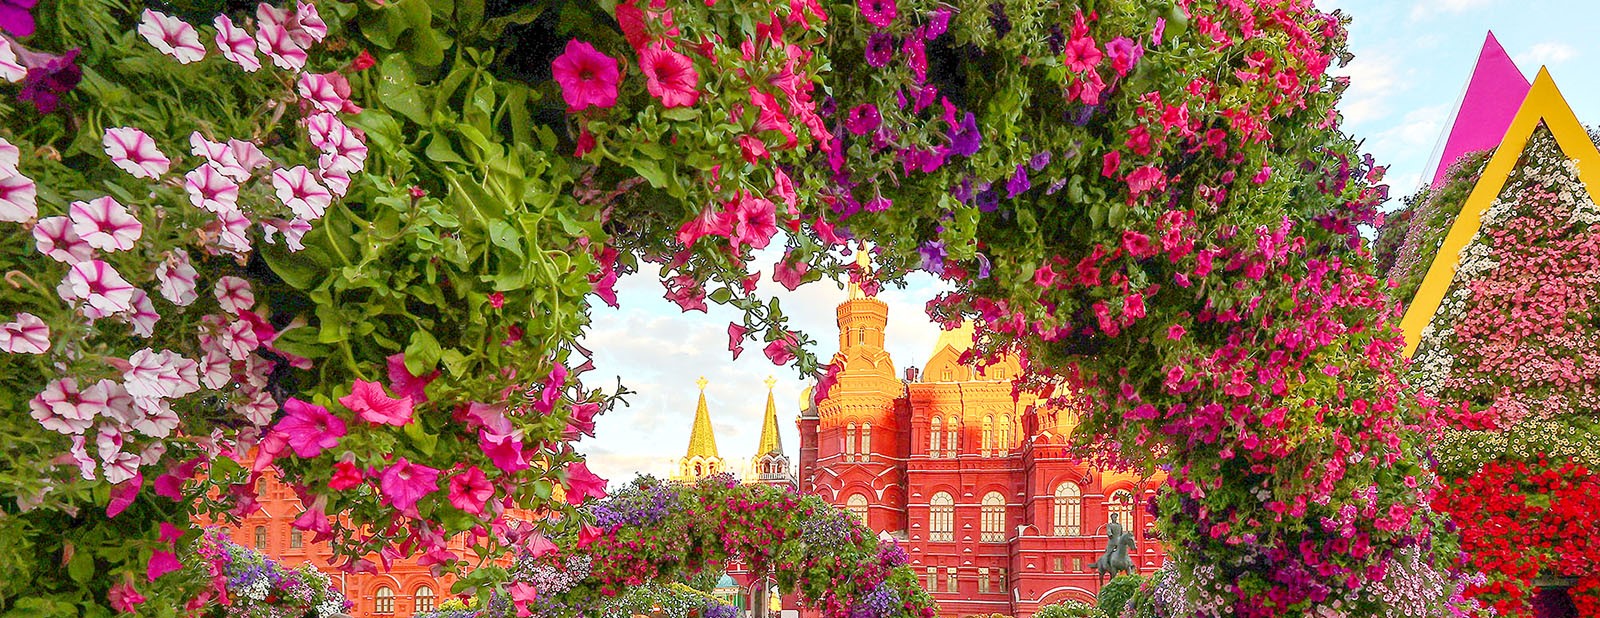 Фестиваль городского ландшафтного дизайна «Цветочный джем» проходит в Москве с 20 июля по 10 сентября. Фото: сайт мэра Москвы 